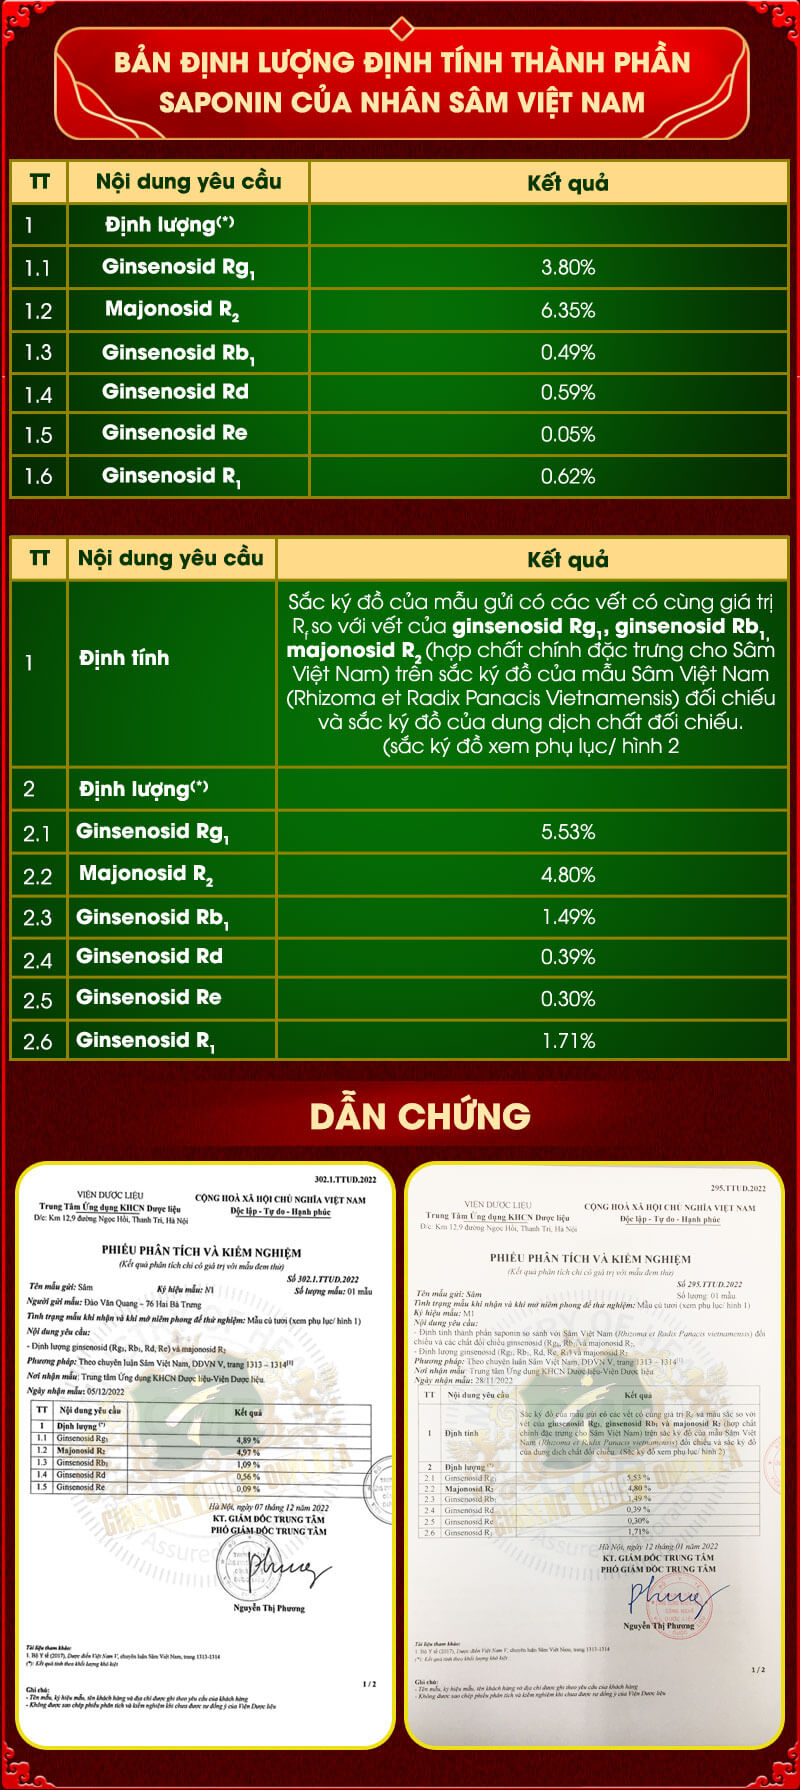 Bản định lượng định tính thành phần saponin của nhân sâm Việt Nam (sâm Ngọc Linh) do GINSENG ONPLZA trồng và kiểm định.